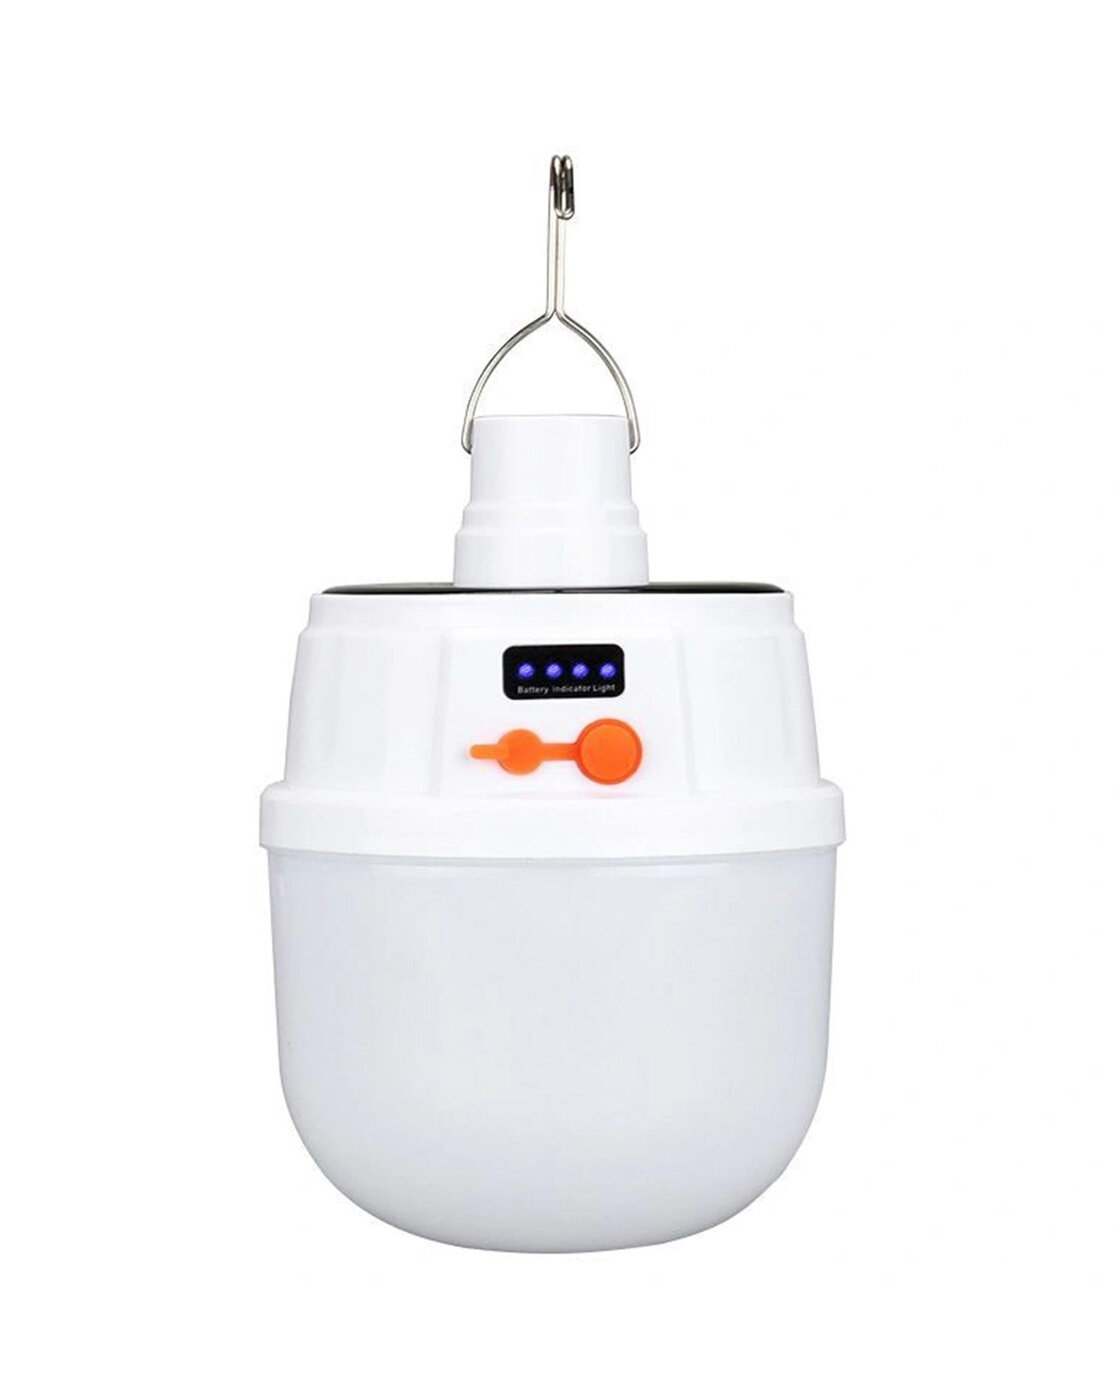 Фонарь-лампа для Кемпинга подвесной аккумуляторный, LED с зарядкой плюс солнечная батарея, 5 режимов / Описание на русском языке